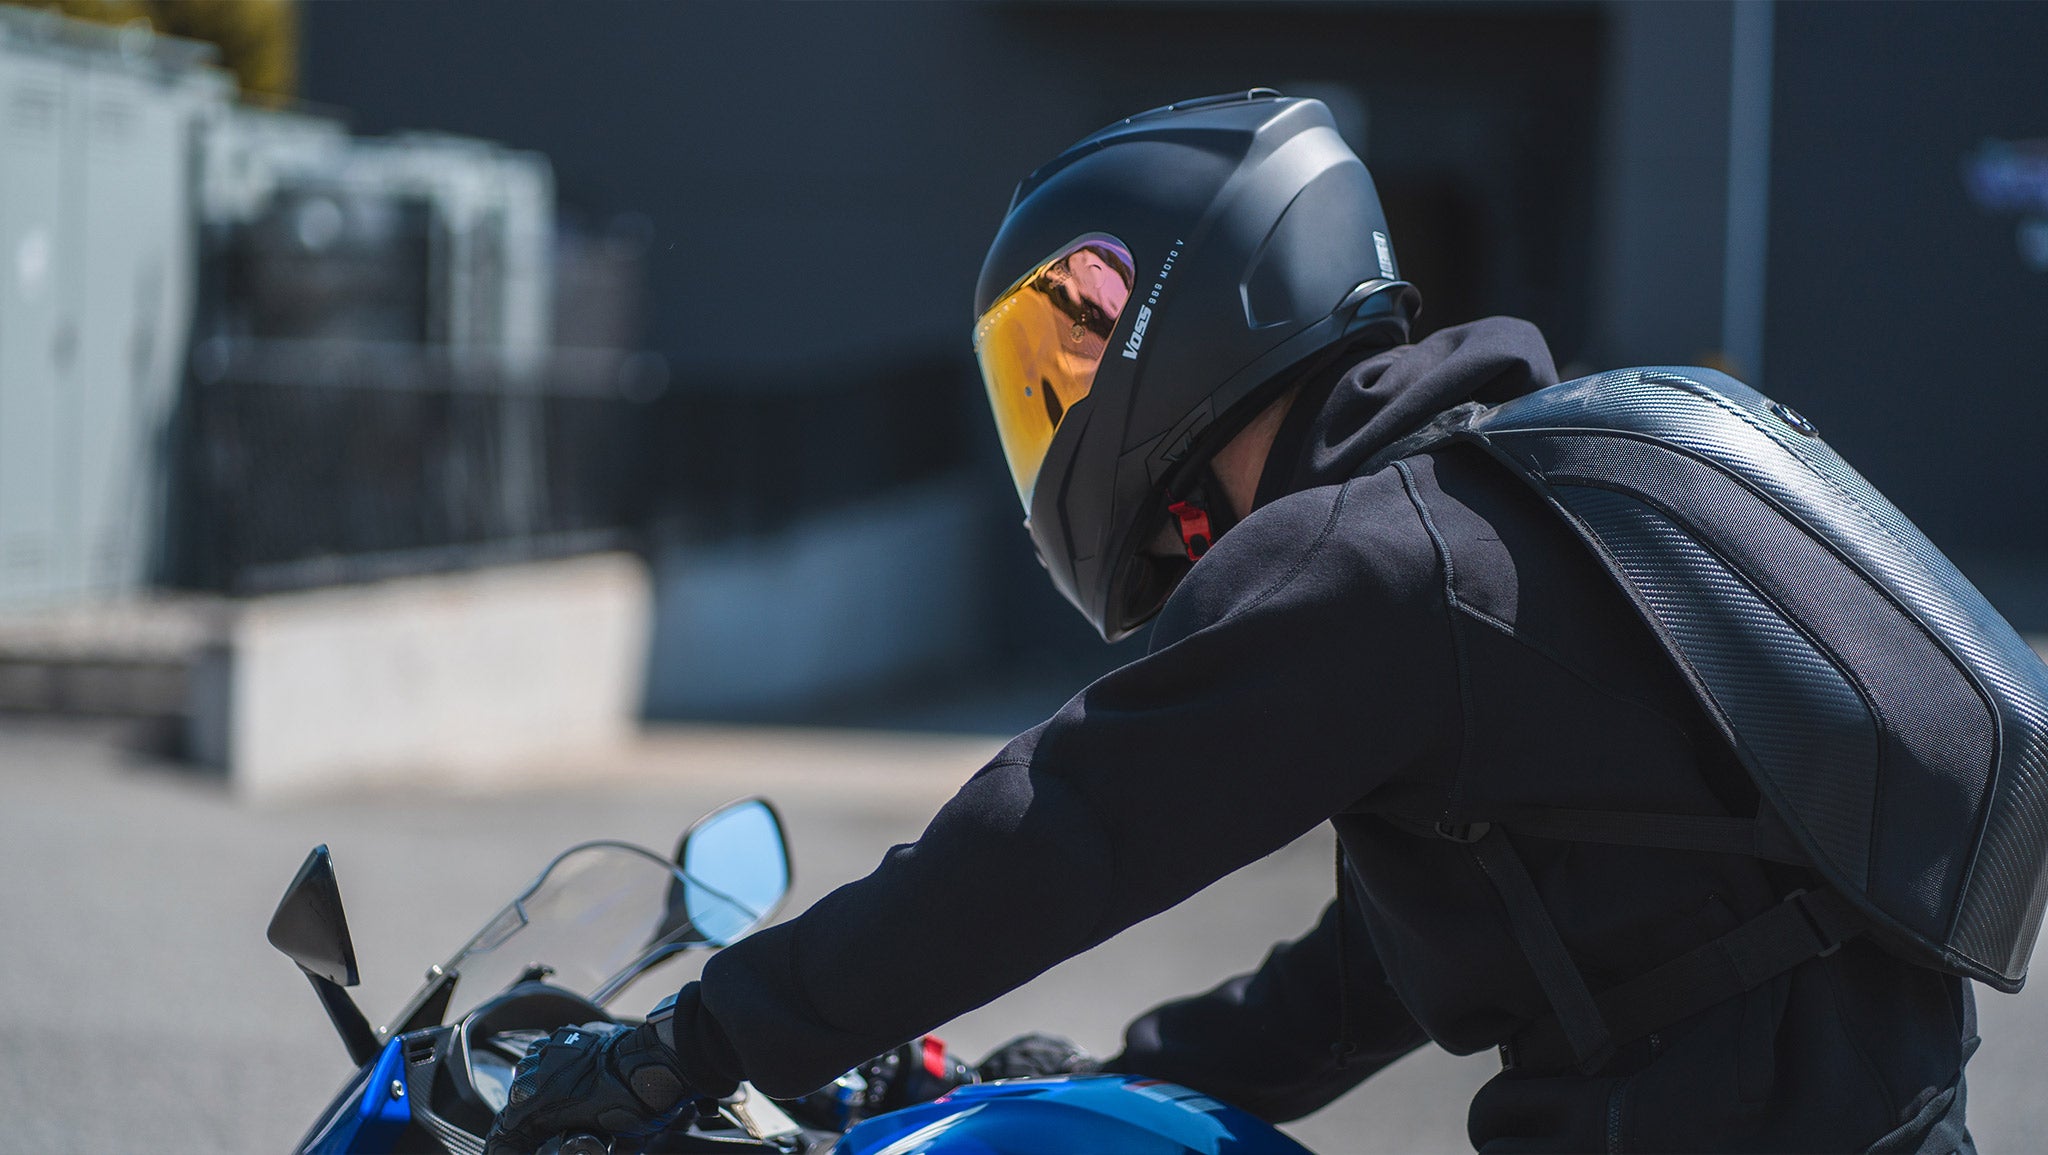 Voss 989 Moto-V Matte White Full Face Helmet